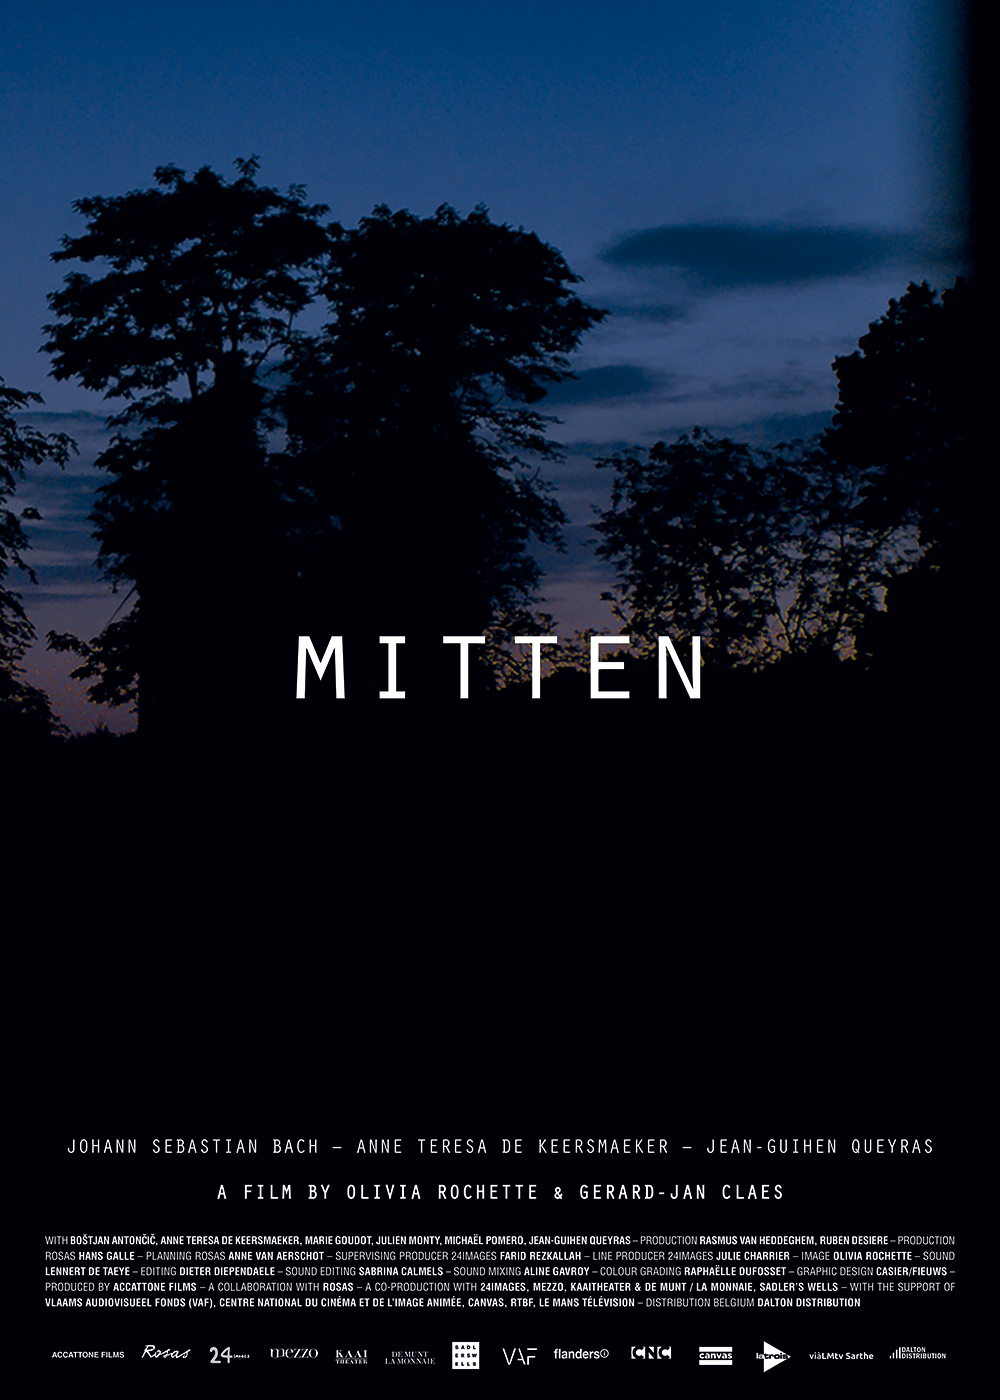 Mitten (Olivia Rochette & Gerard-Jan Claes, 2019)